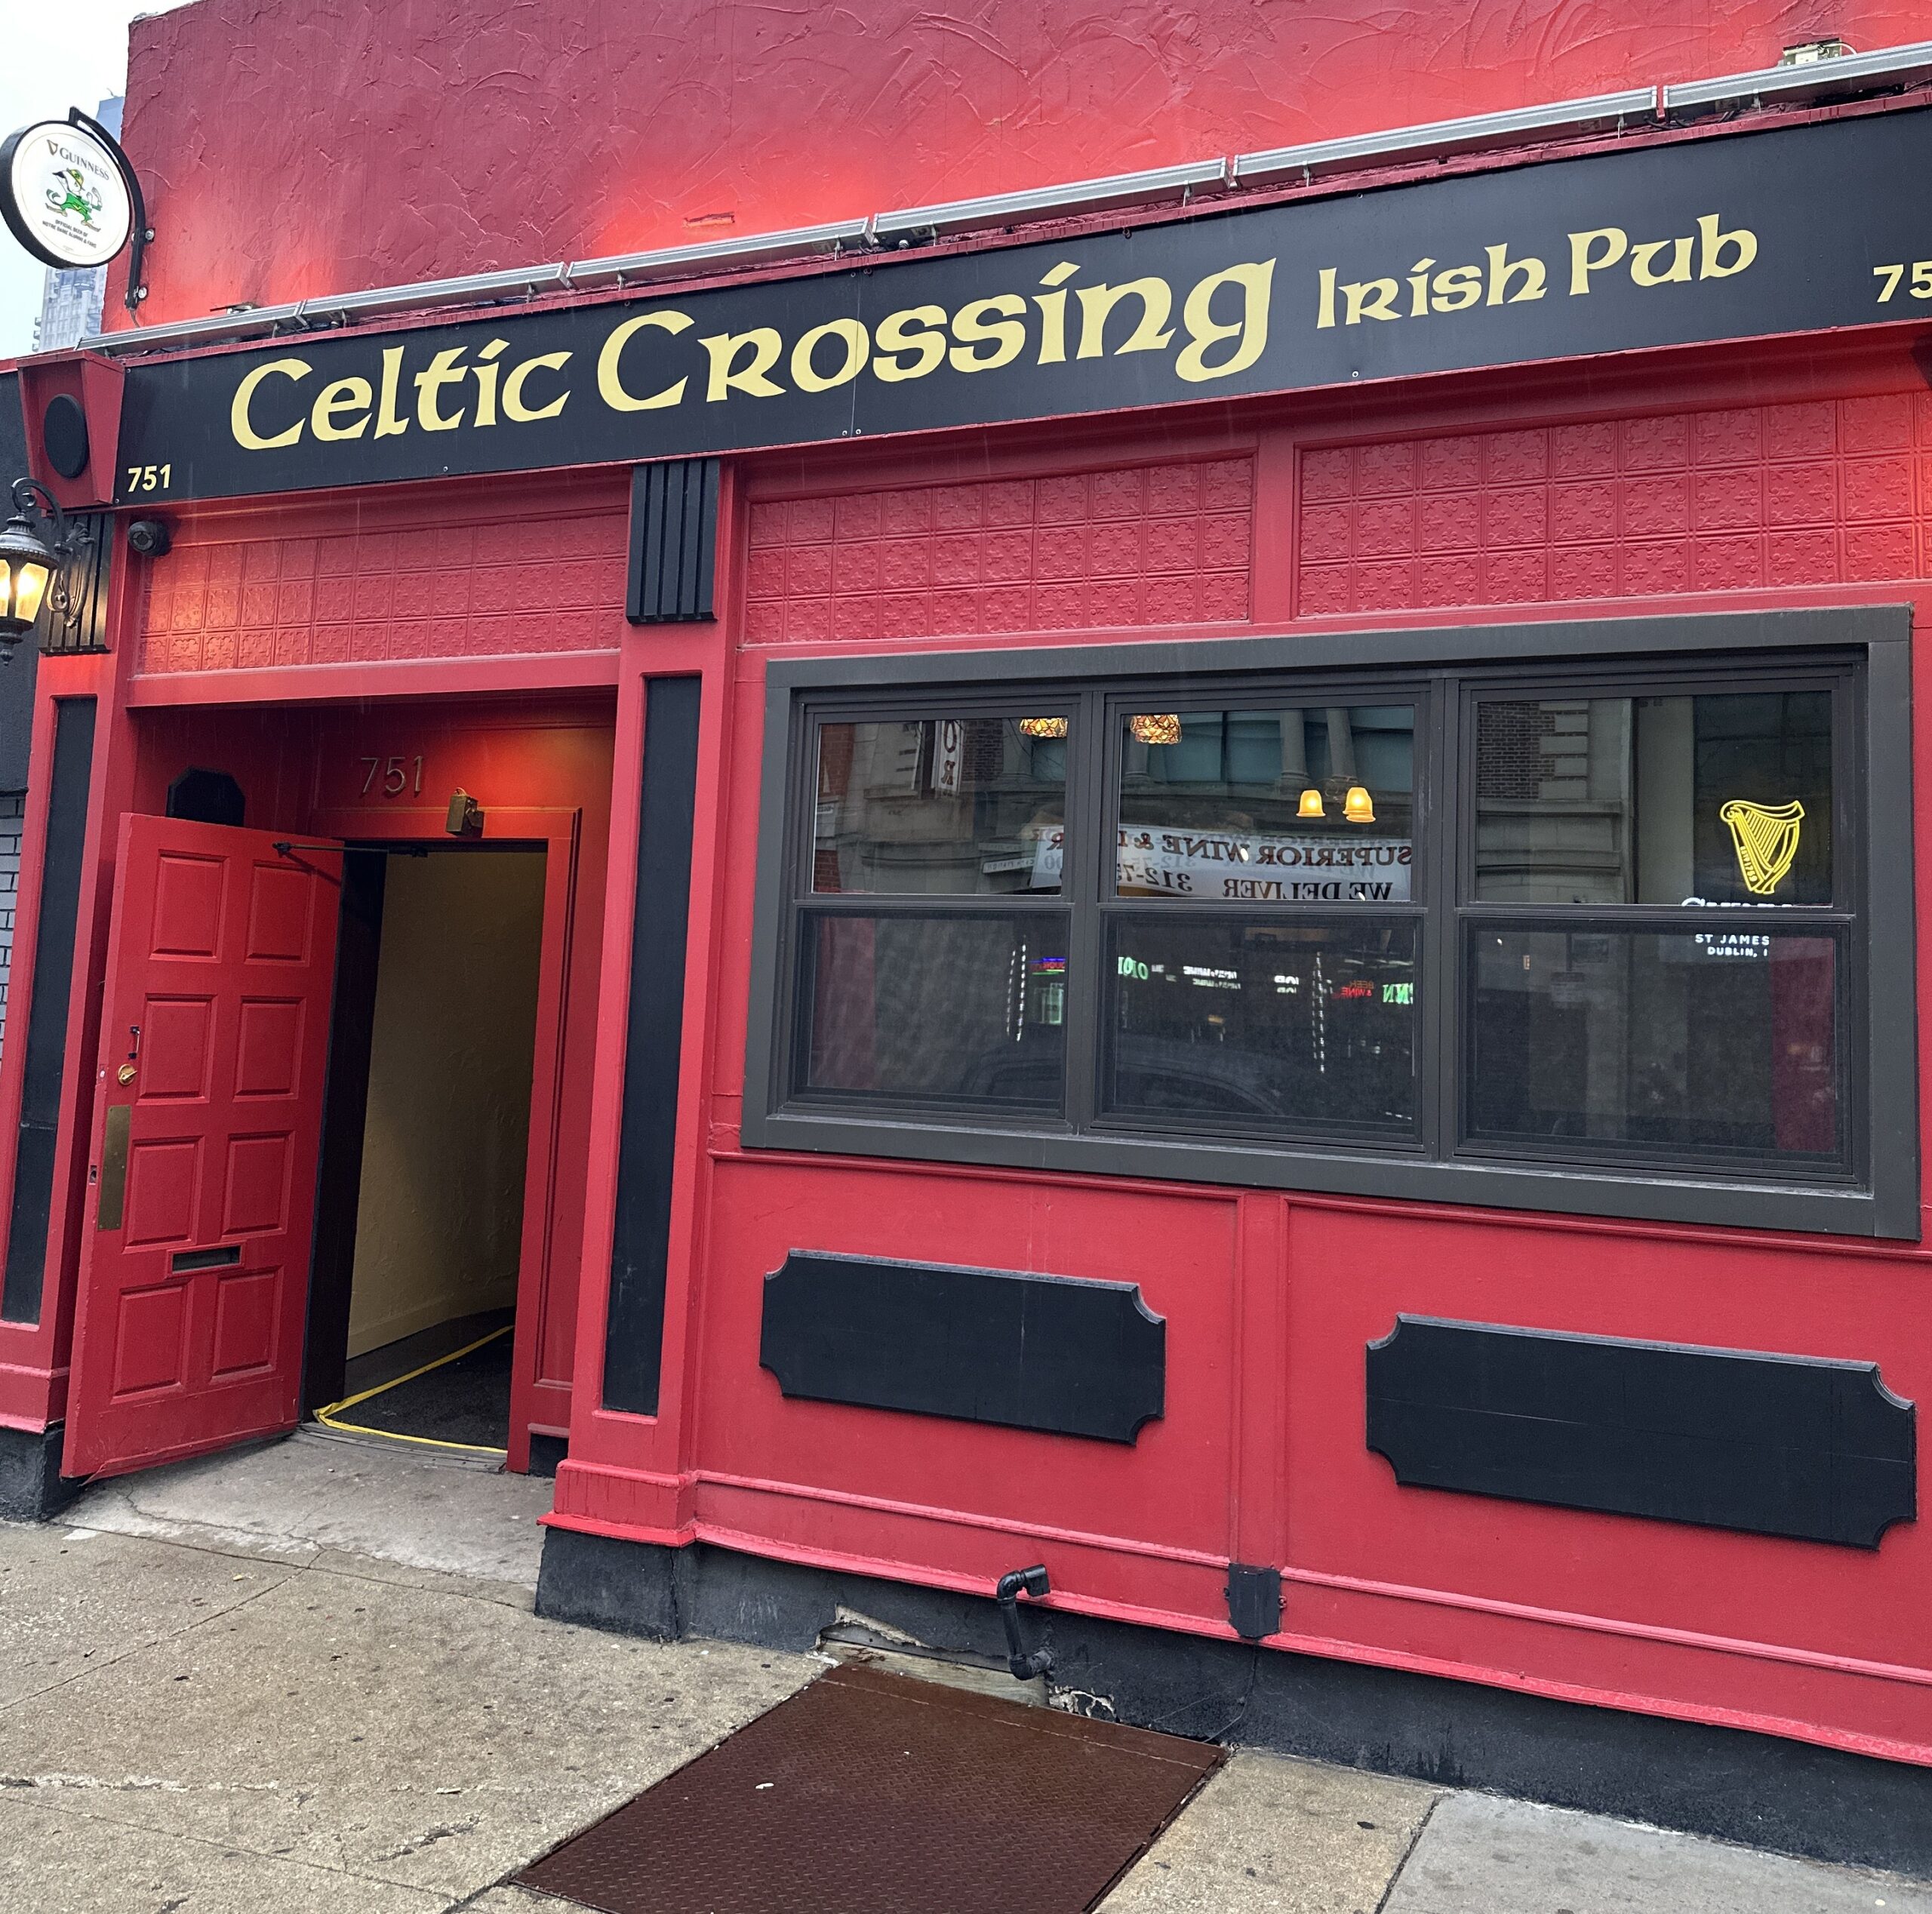 Celtic Crossing, Best Irish pubs in Chicago